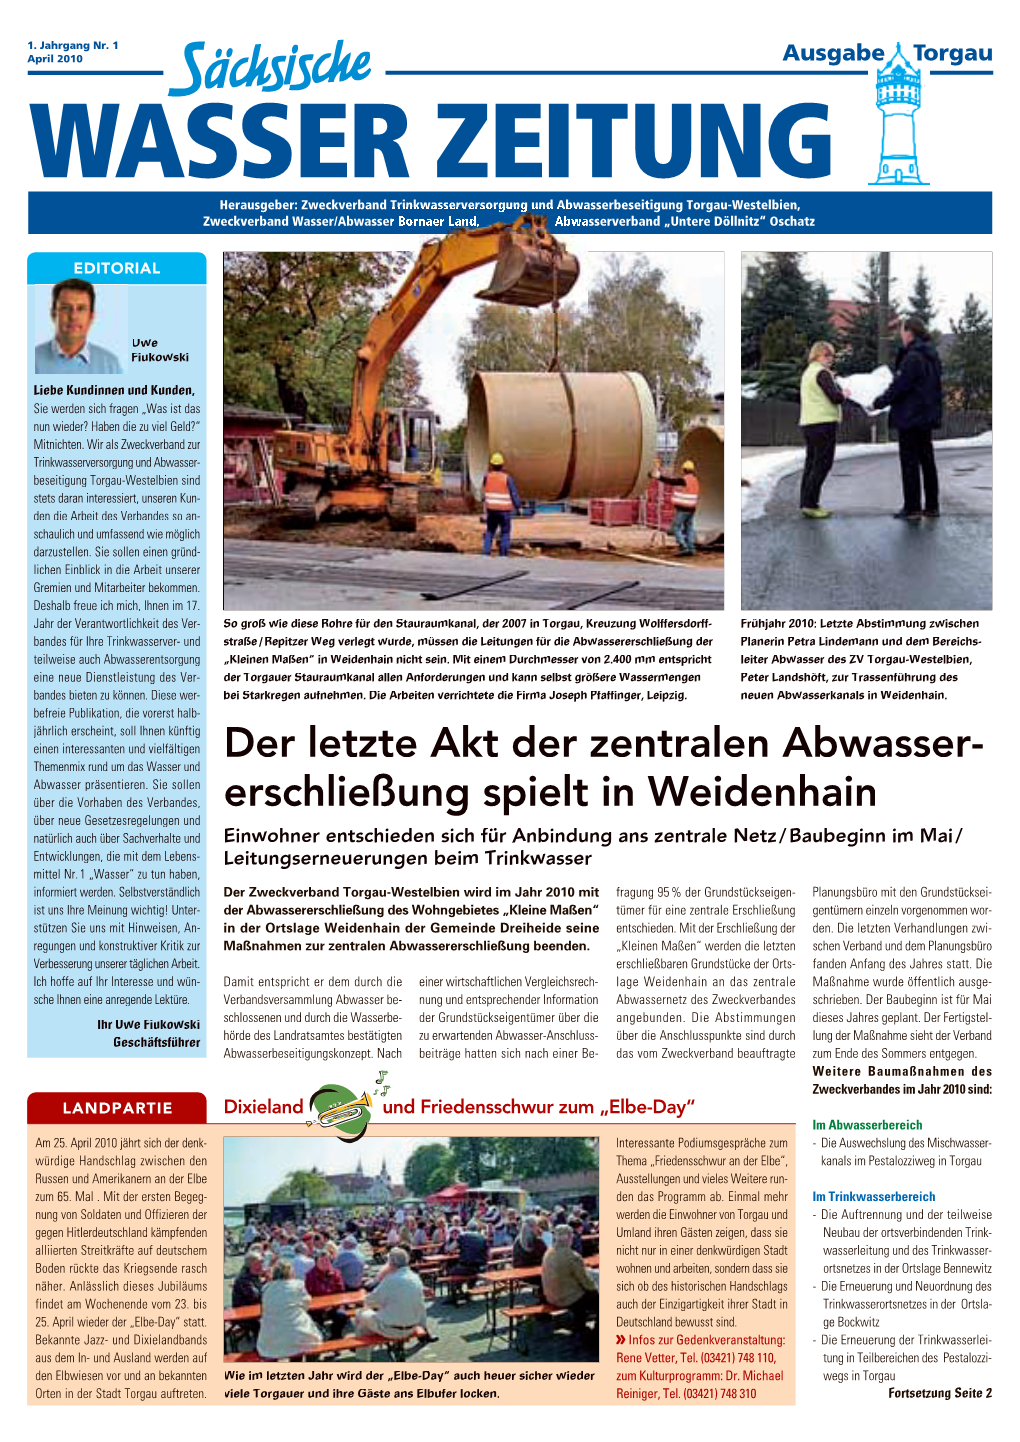 Der Letzte Akt Der Zentralen Abwasser- Erschließung Spielt in Weidenhain